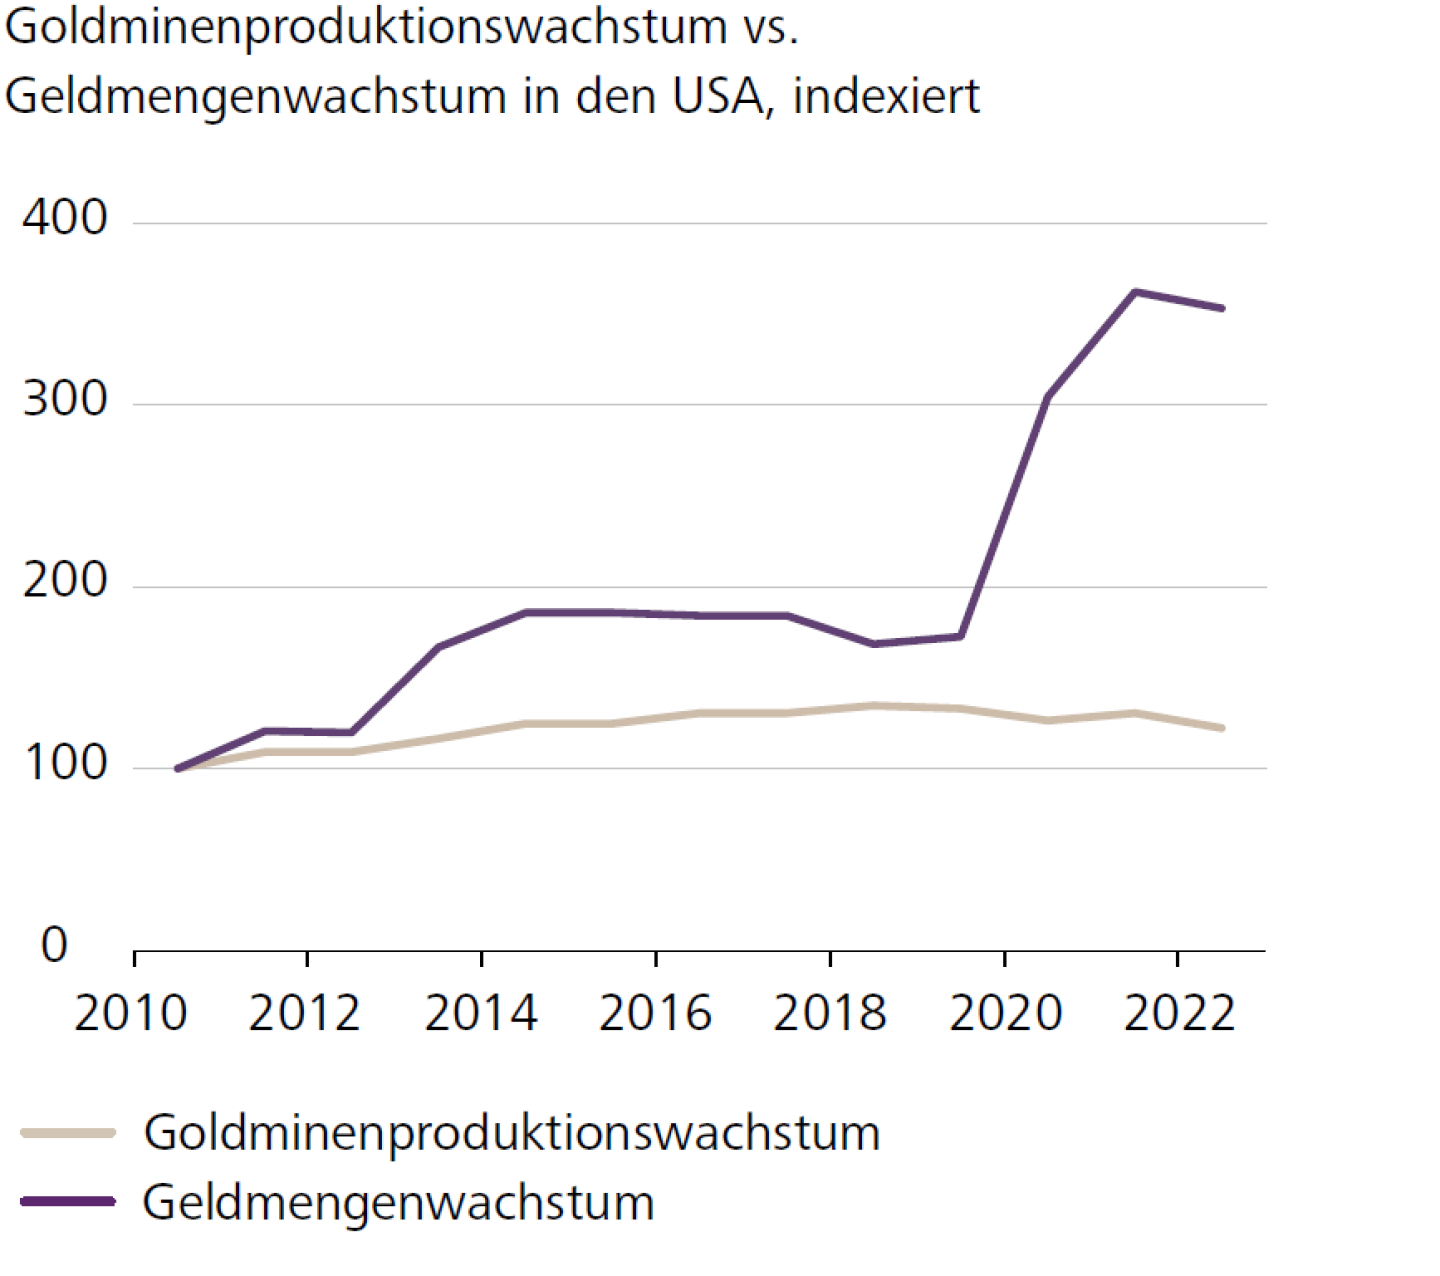 Goldminenproduktionswachstum vs. Geldmengenwachstum in den USA, indexiert